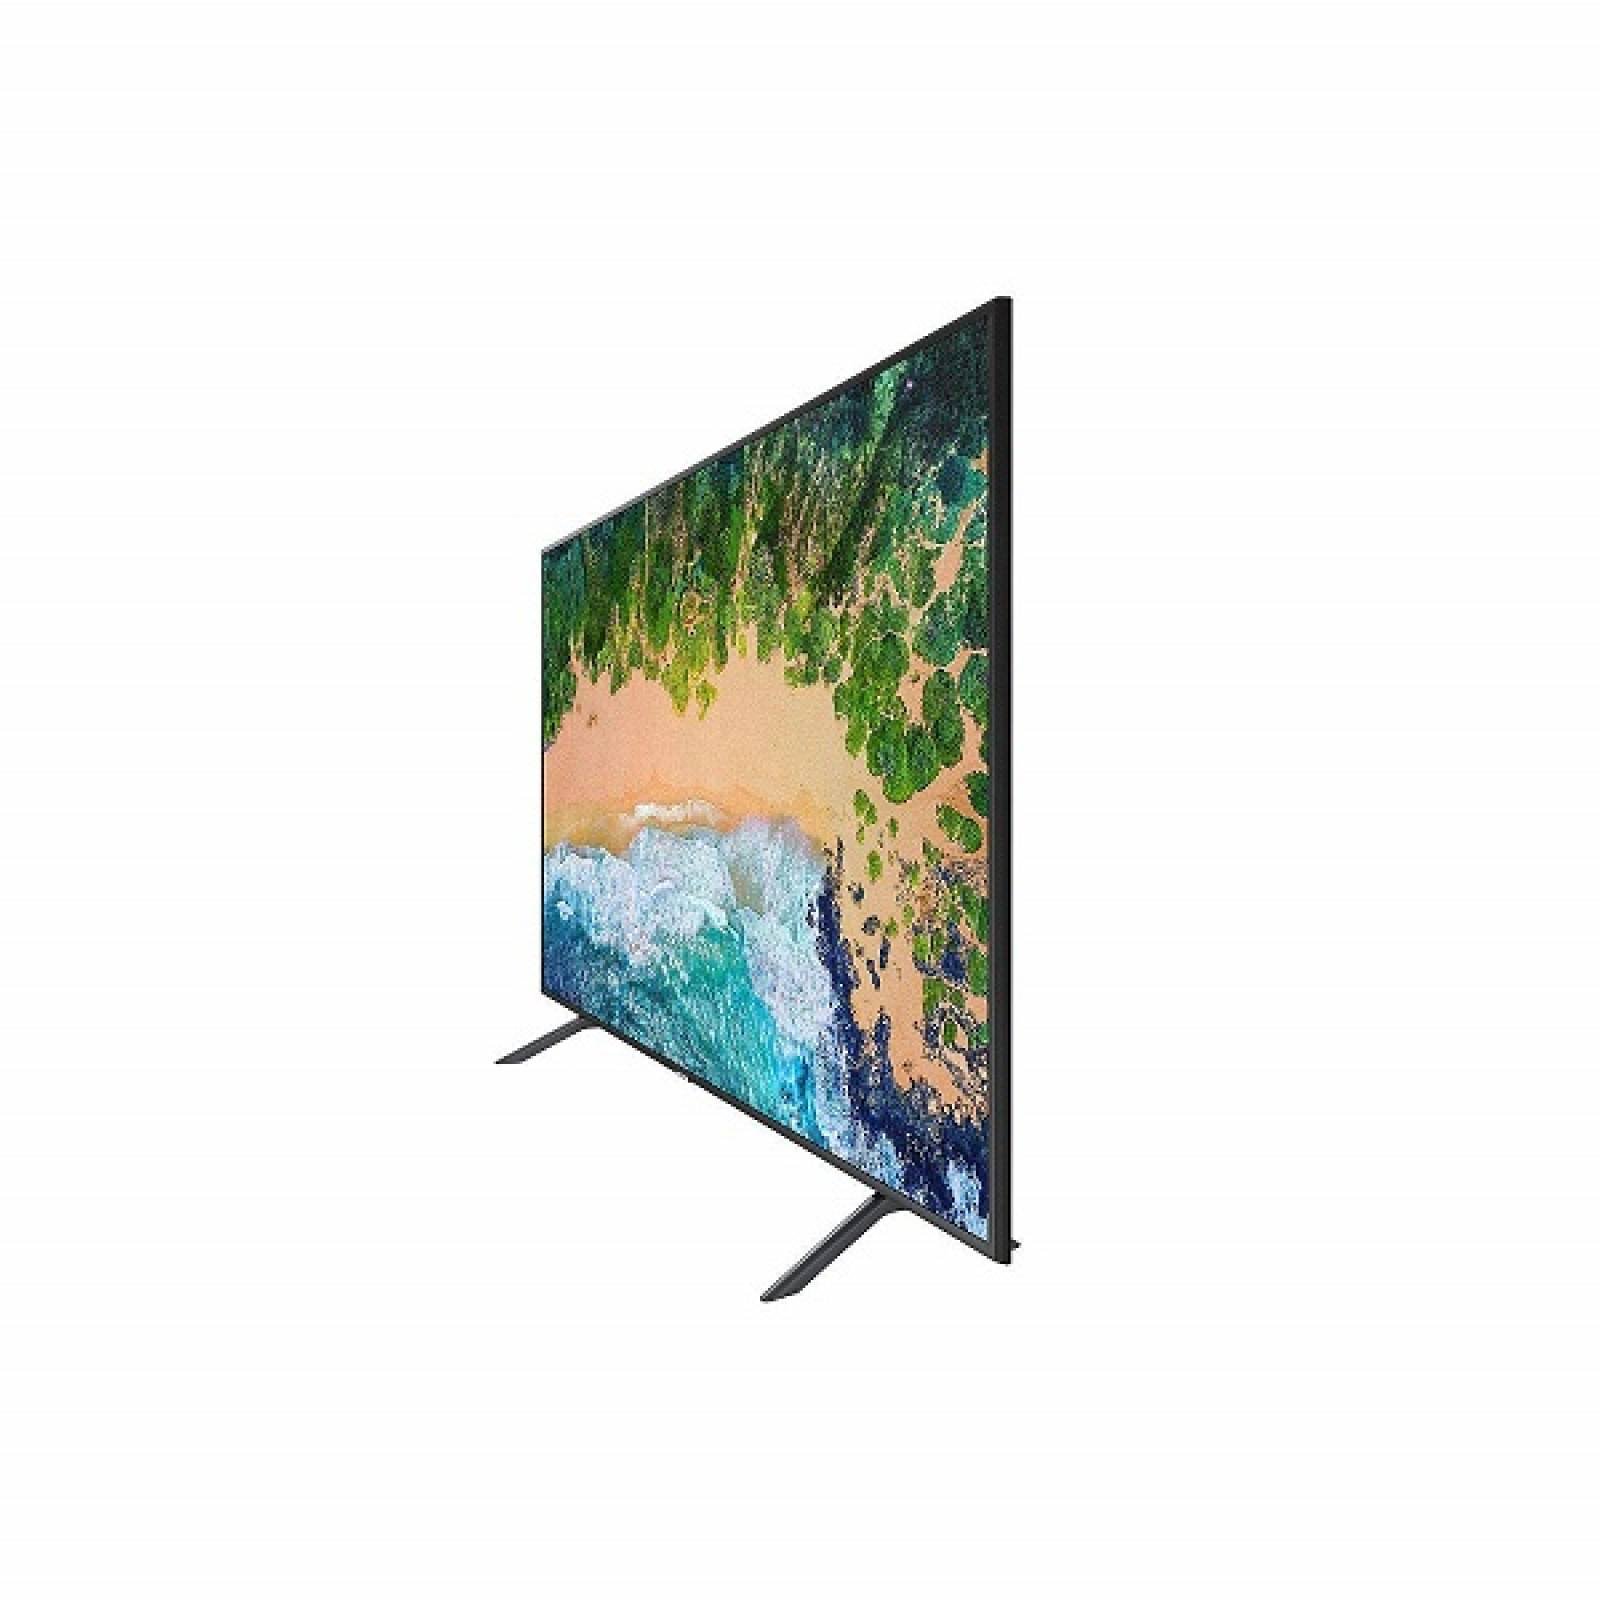 Smart TV 50 Samsung LED 4K UHD HDR USB HDMI UN50NU710DFXZA - Reacondicionado